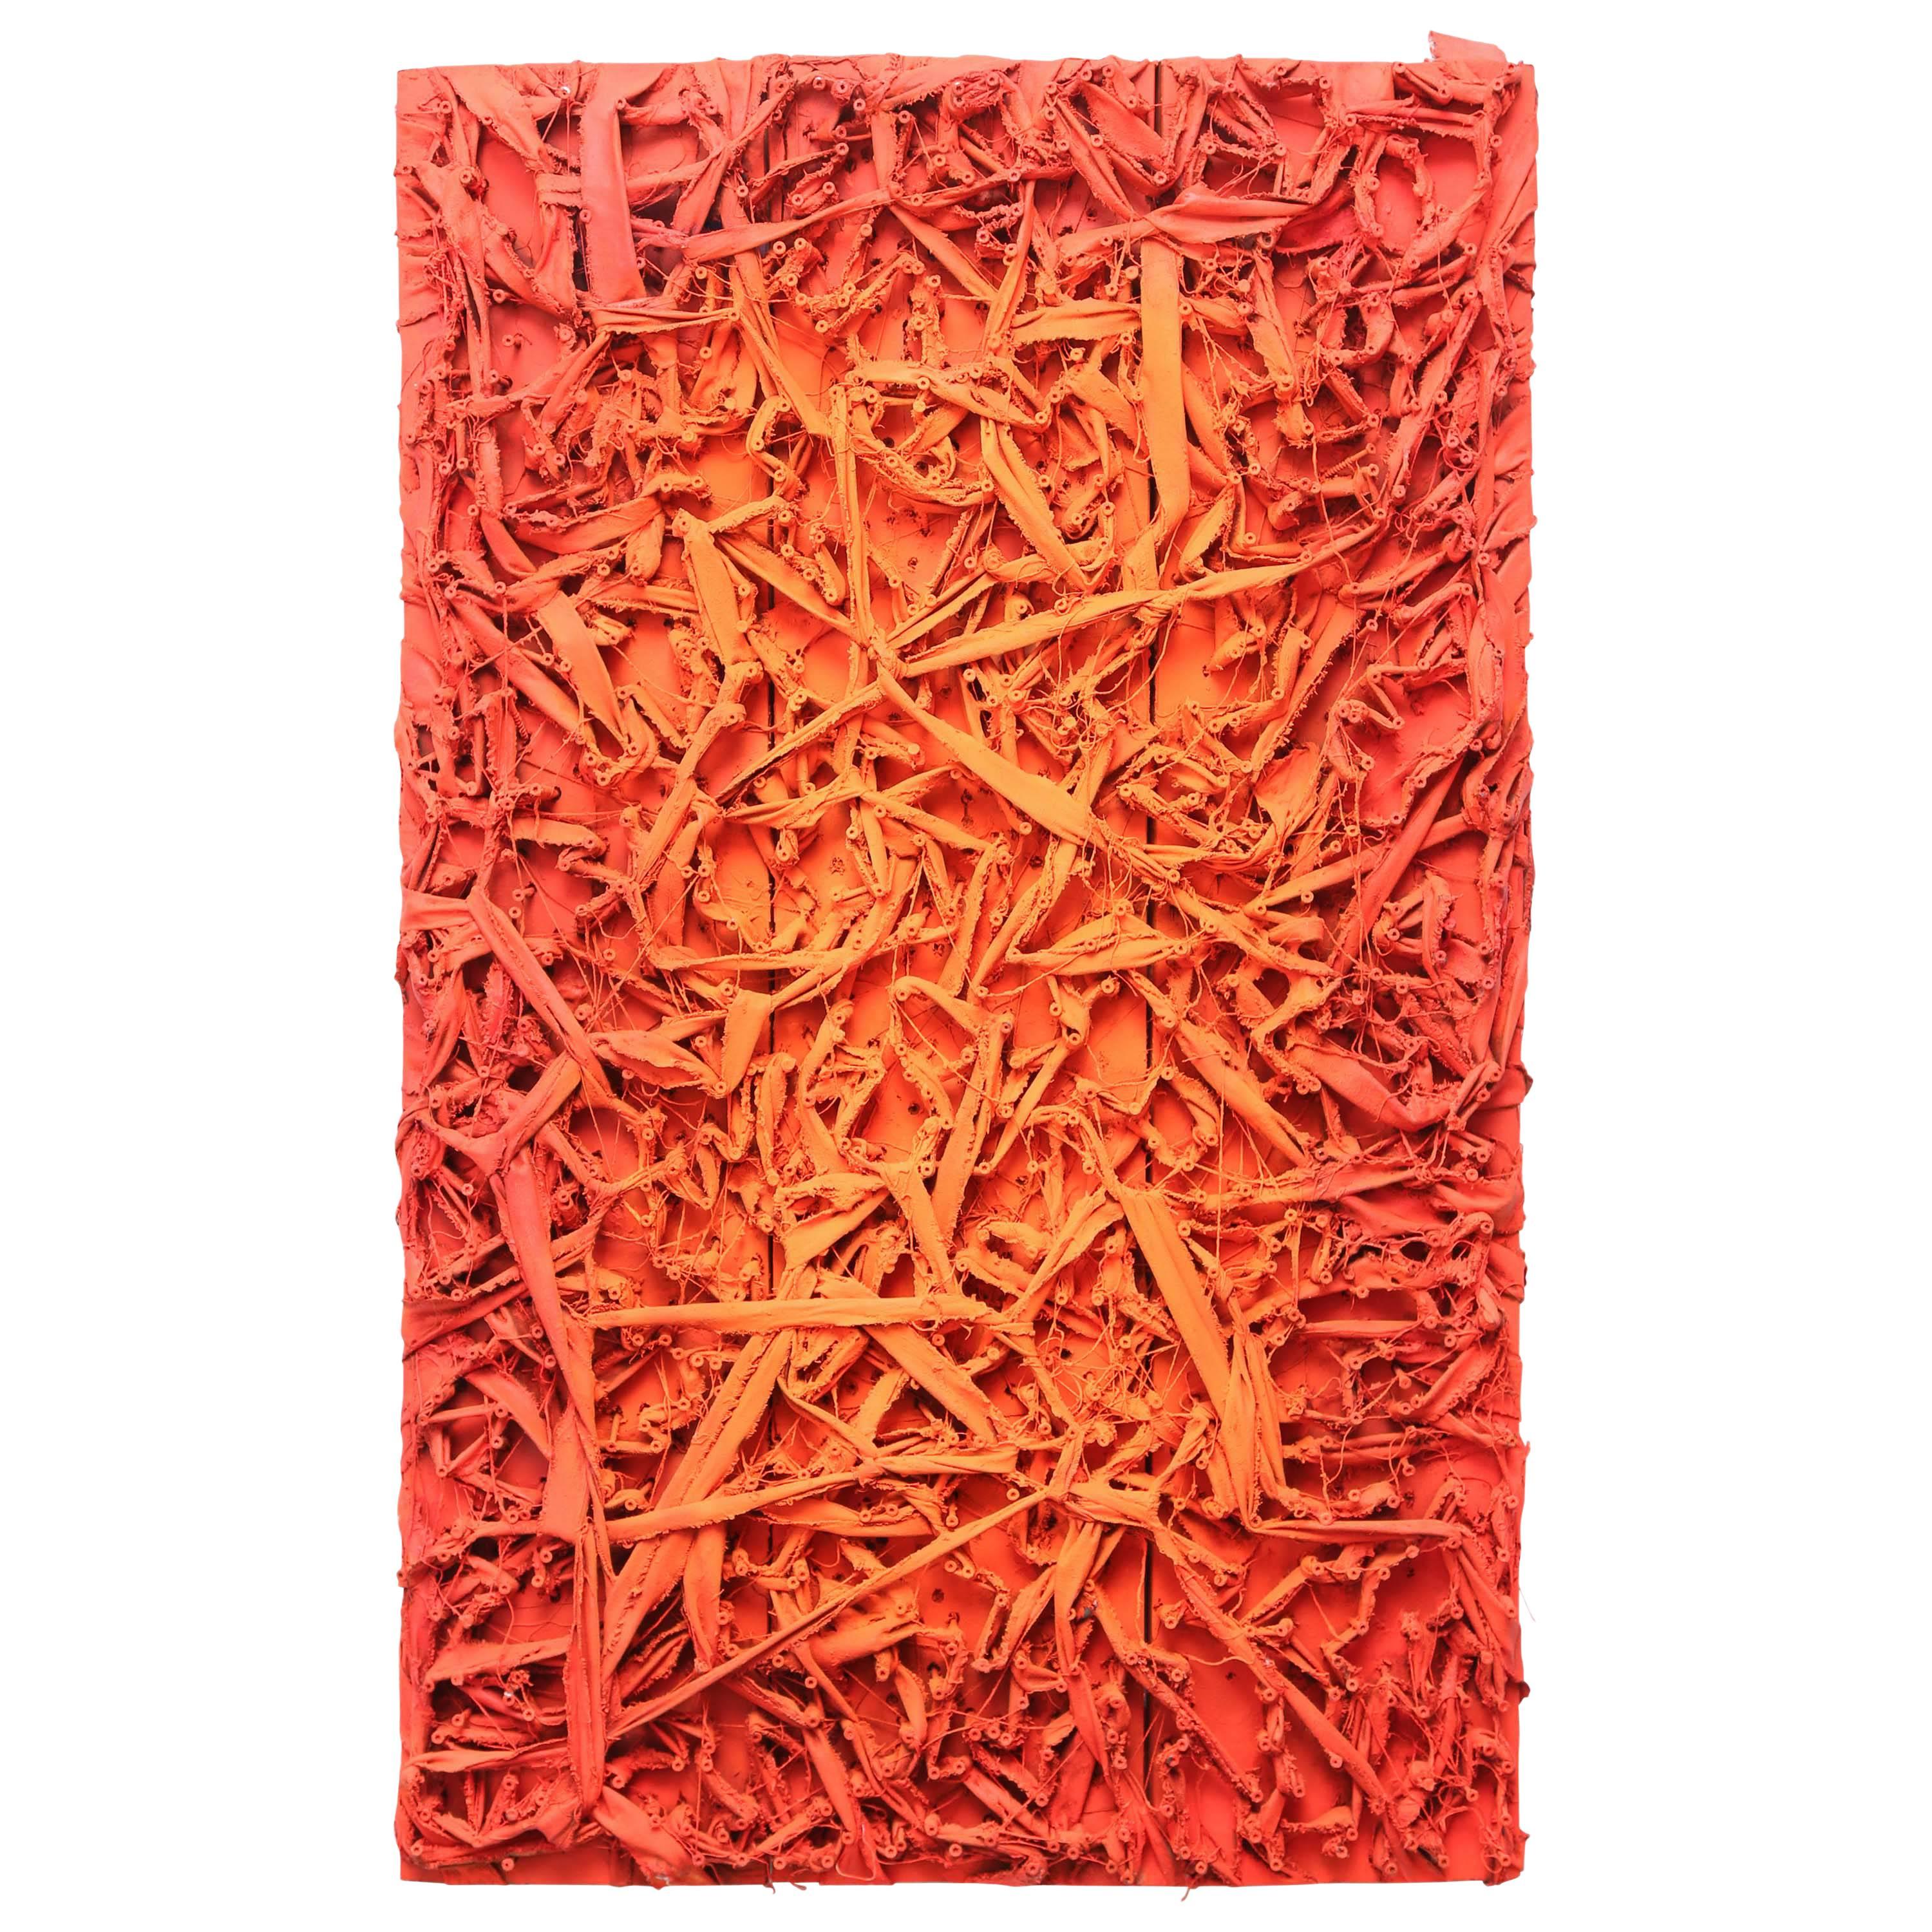 Zeitgenössische Kunst in Orange- und Rottönen in Übergröße, USA, 2011